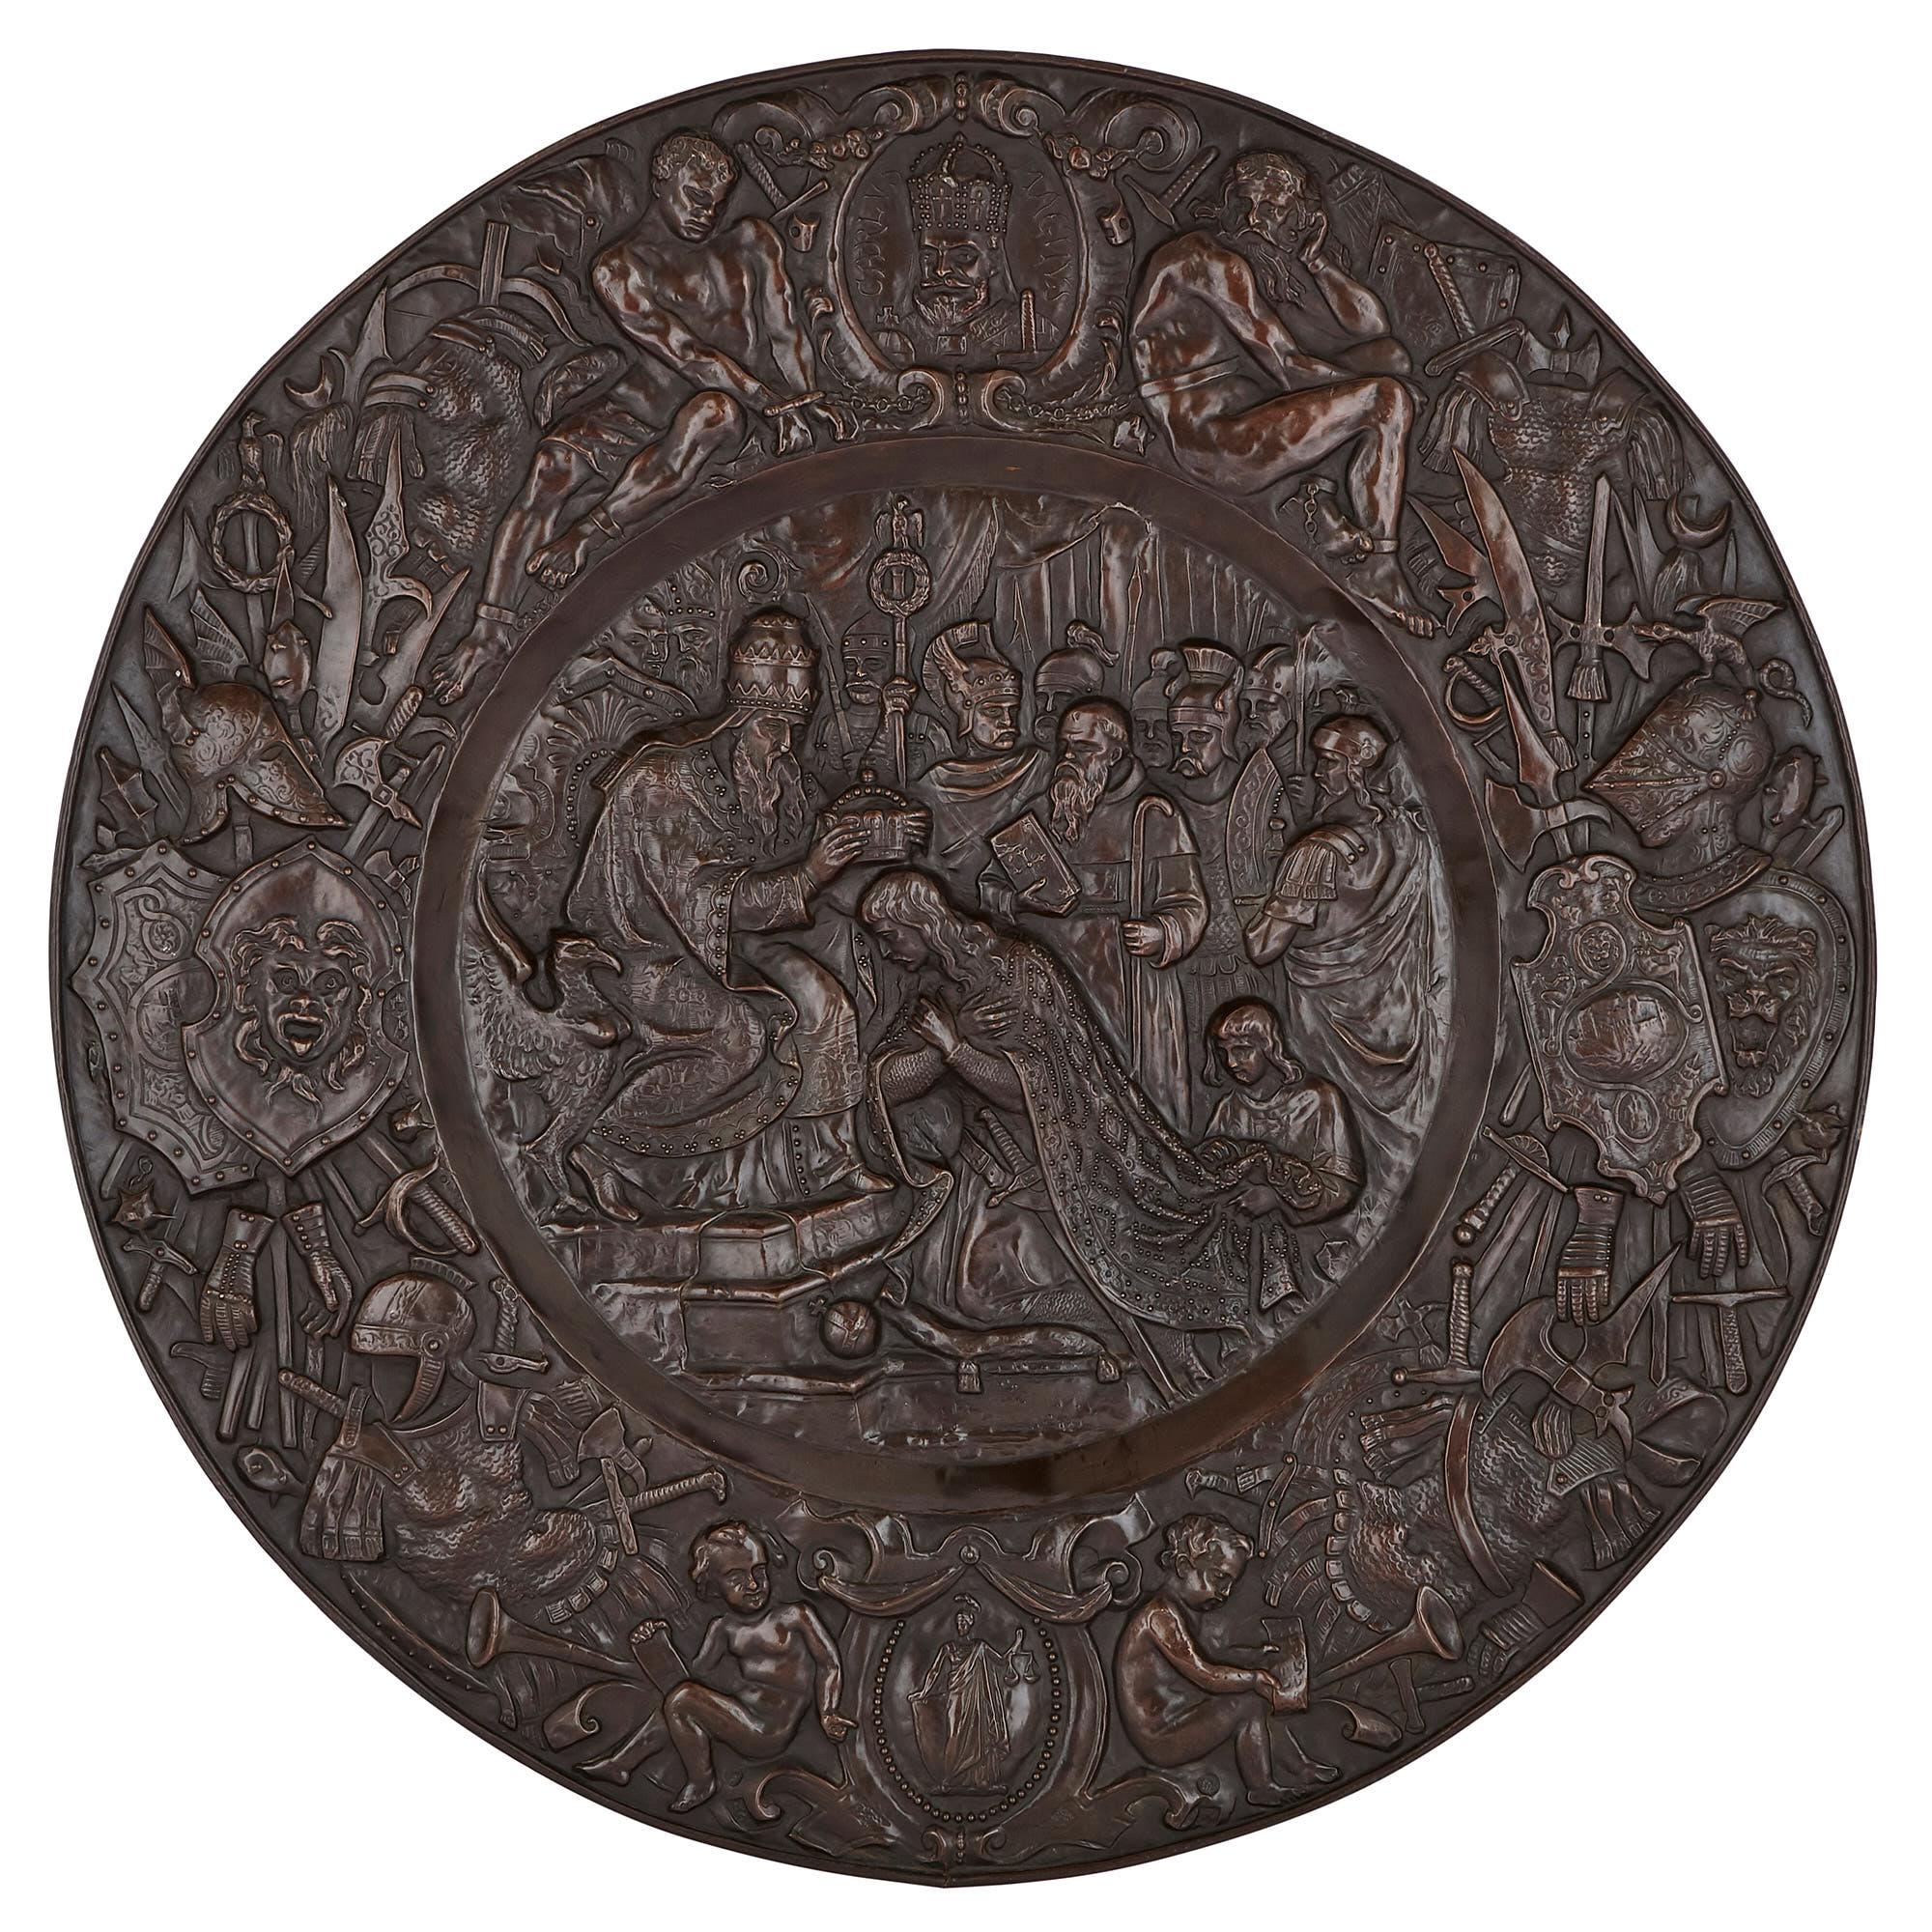 Diese drei runden Kupfertafeln wurden im 19. Jahrhundert in Frankreich hergestellt. Sie sind mit biblischen und christlichen Motiven aus dem Leben von König Salomon (gest. 931 v. Chr.) und König Karl dem Großen (742 - 814 n. Chr.) geschmückt.